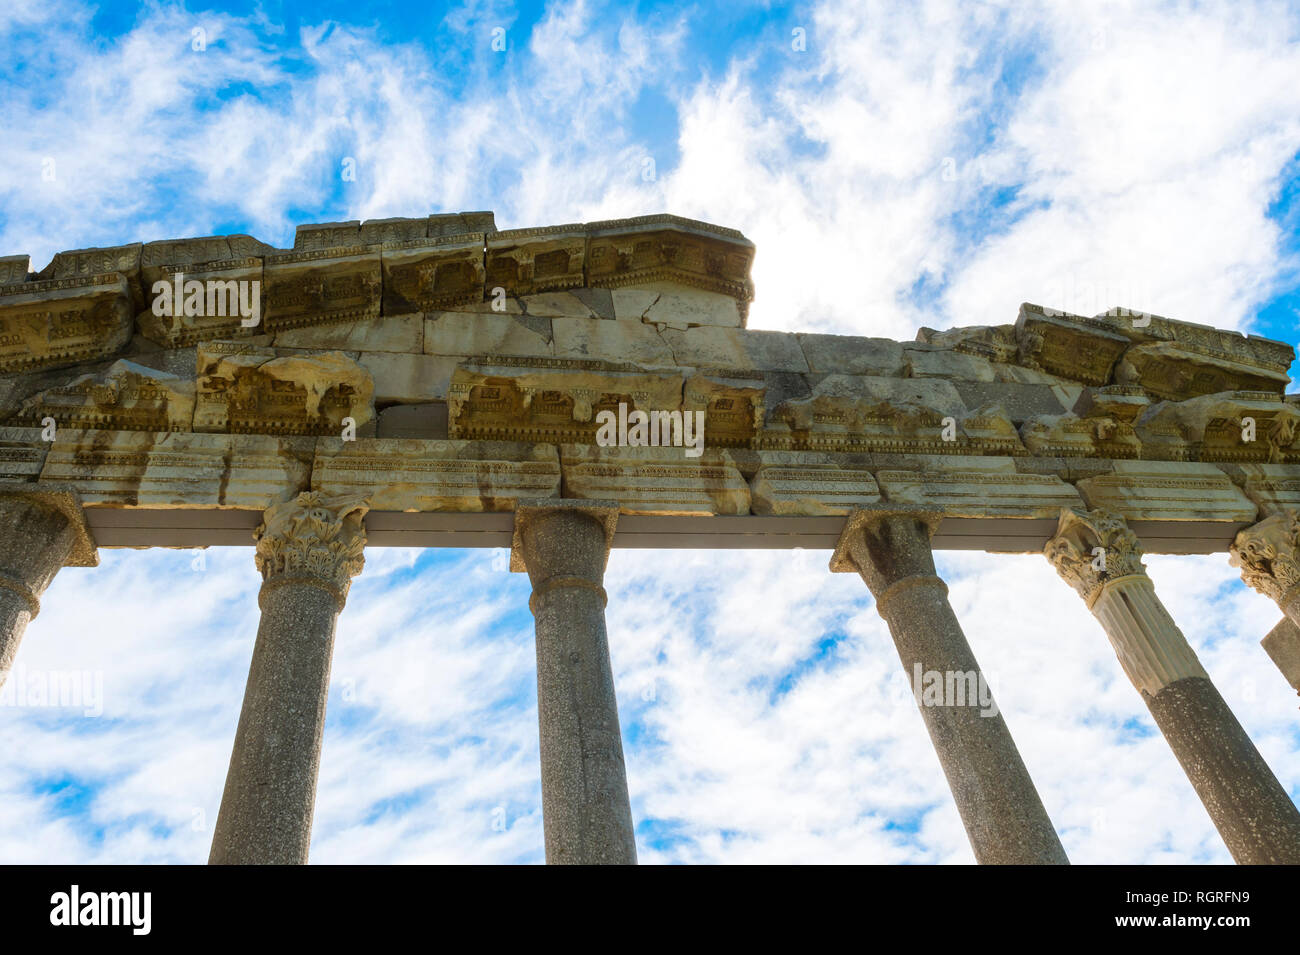 Agonothetes o Bouleuterion monumento, Apollonia parco archeologico, Pojani Village, Illyria, Albania Foto Stock